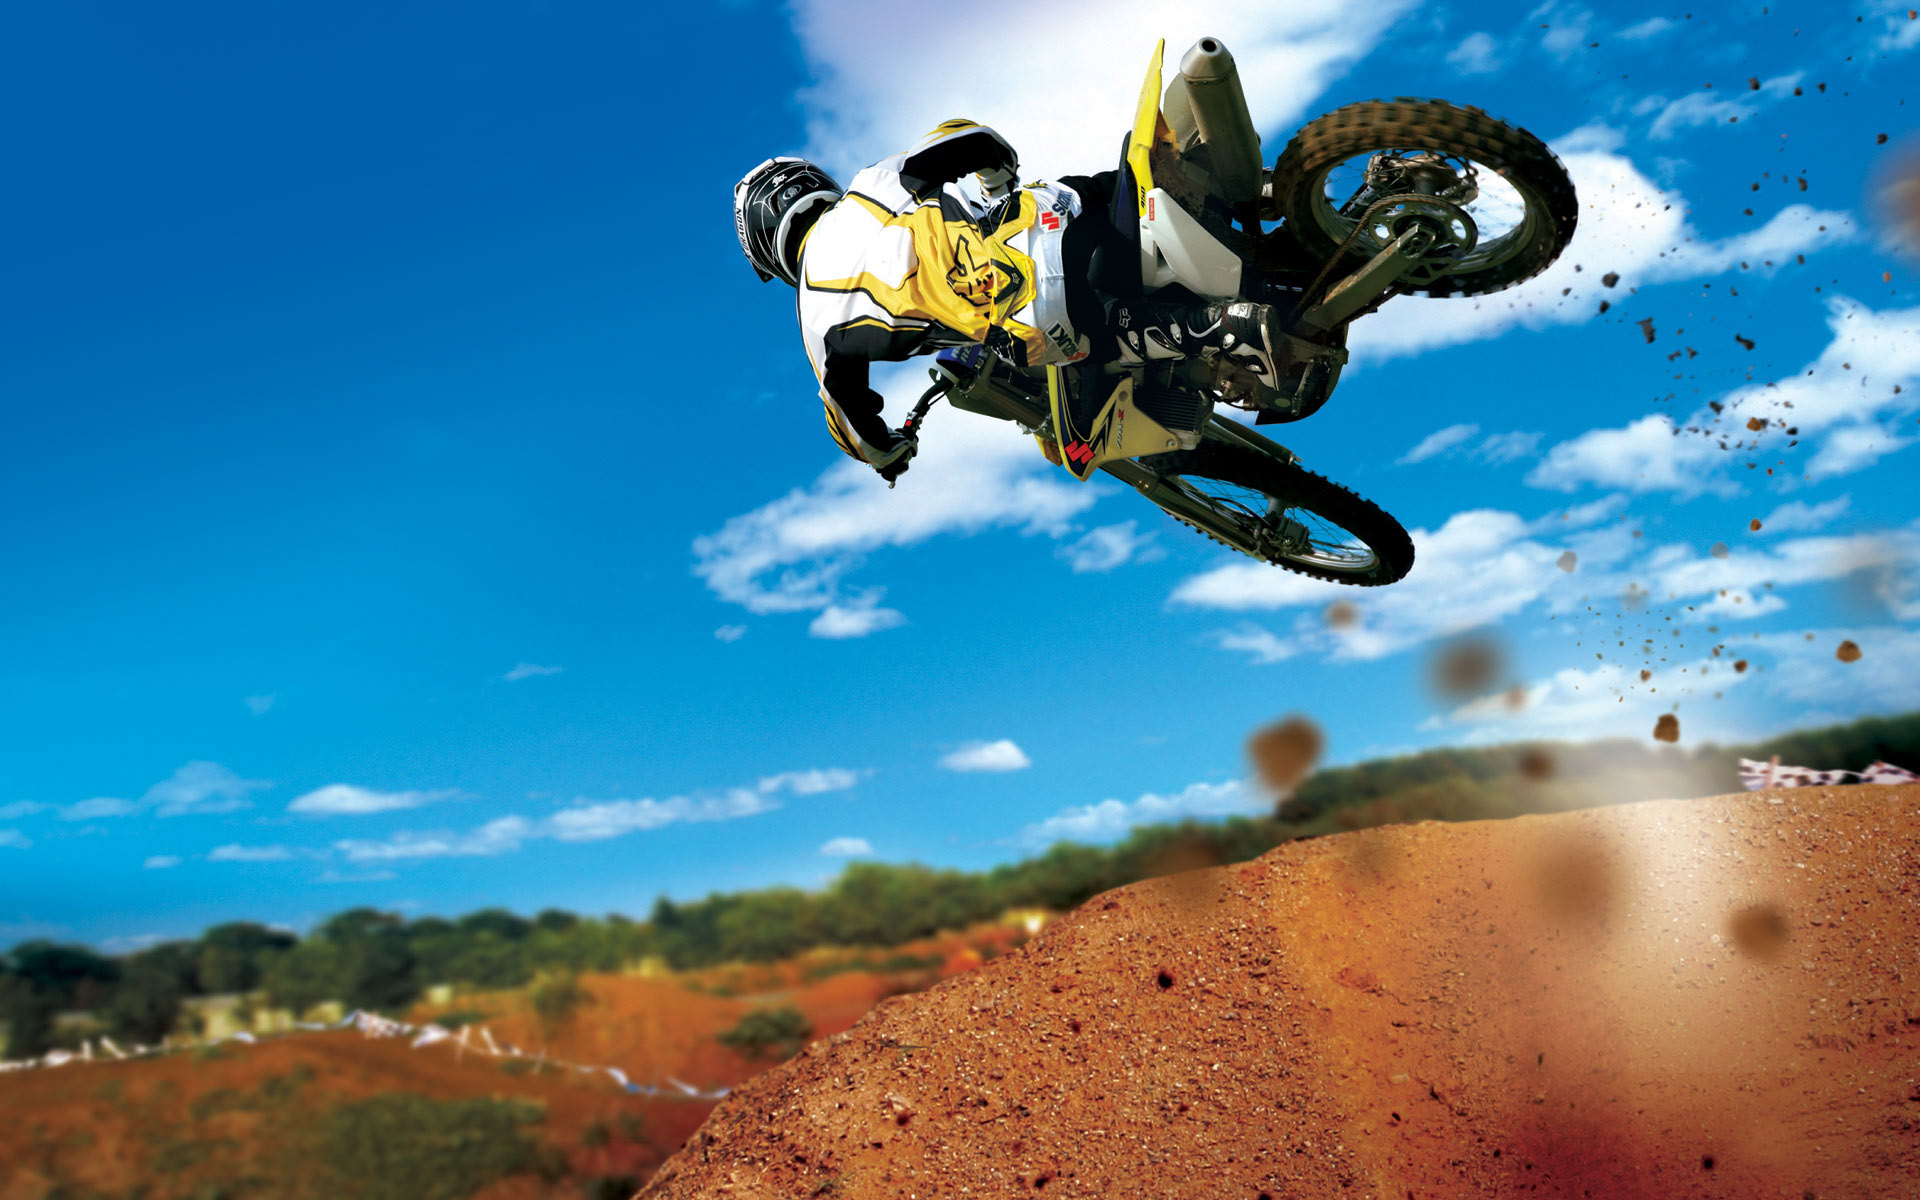 Motocross Stunt2408311248 - Motocross Stunt - Stunt, Motocross, Kawasaki